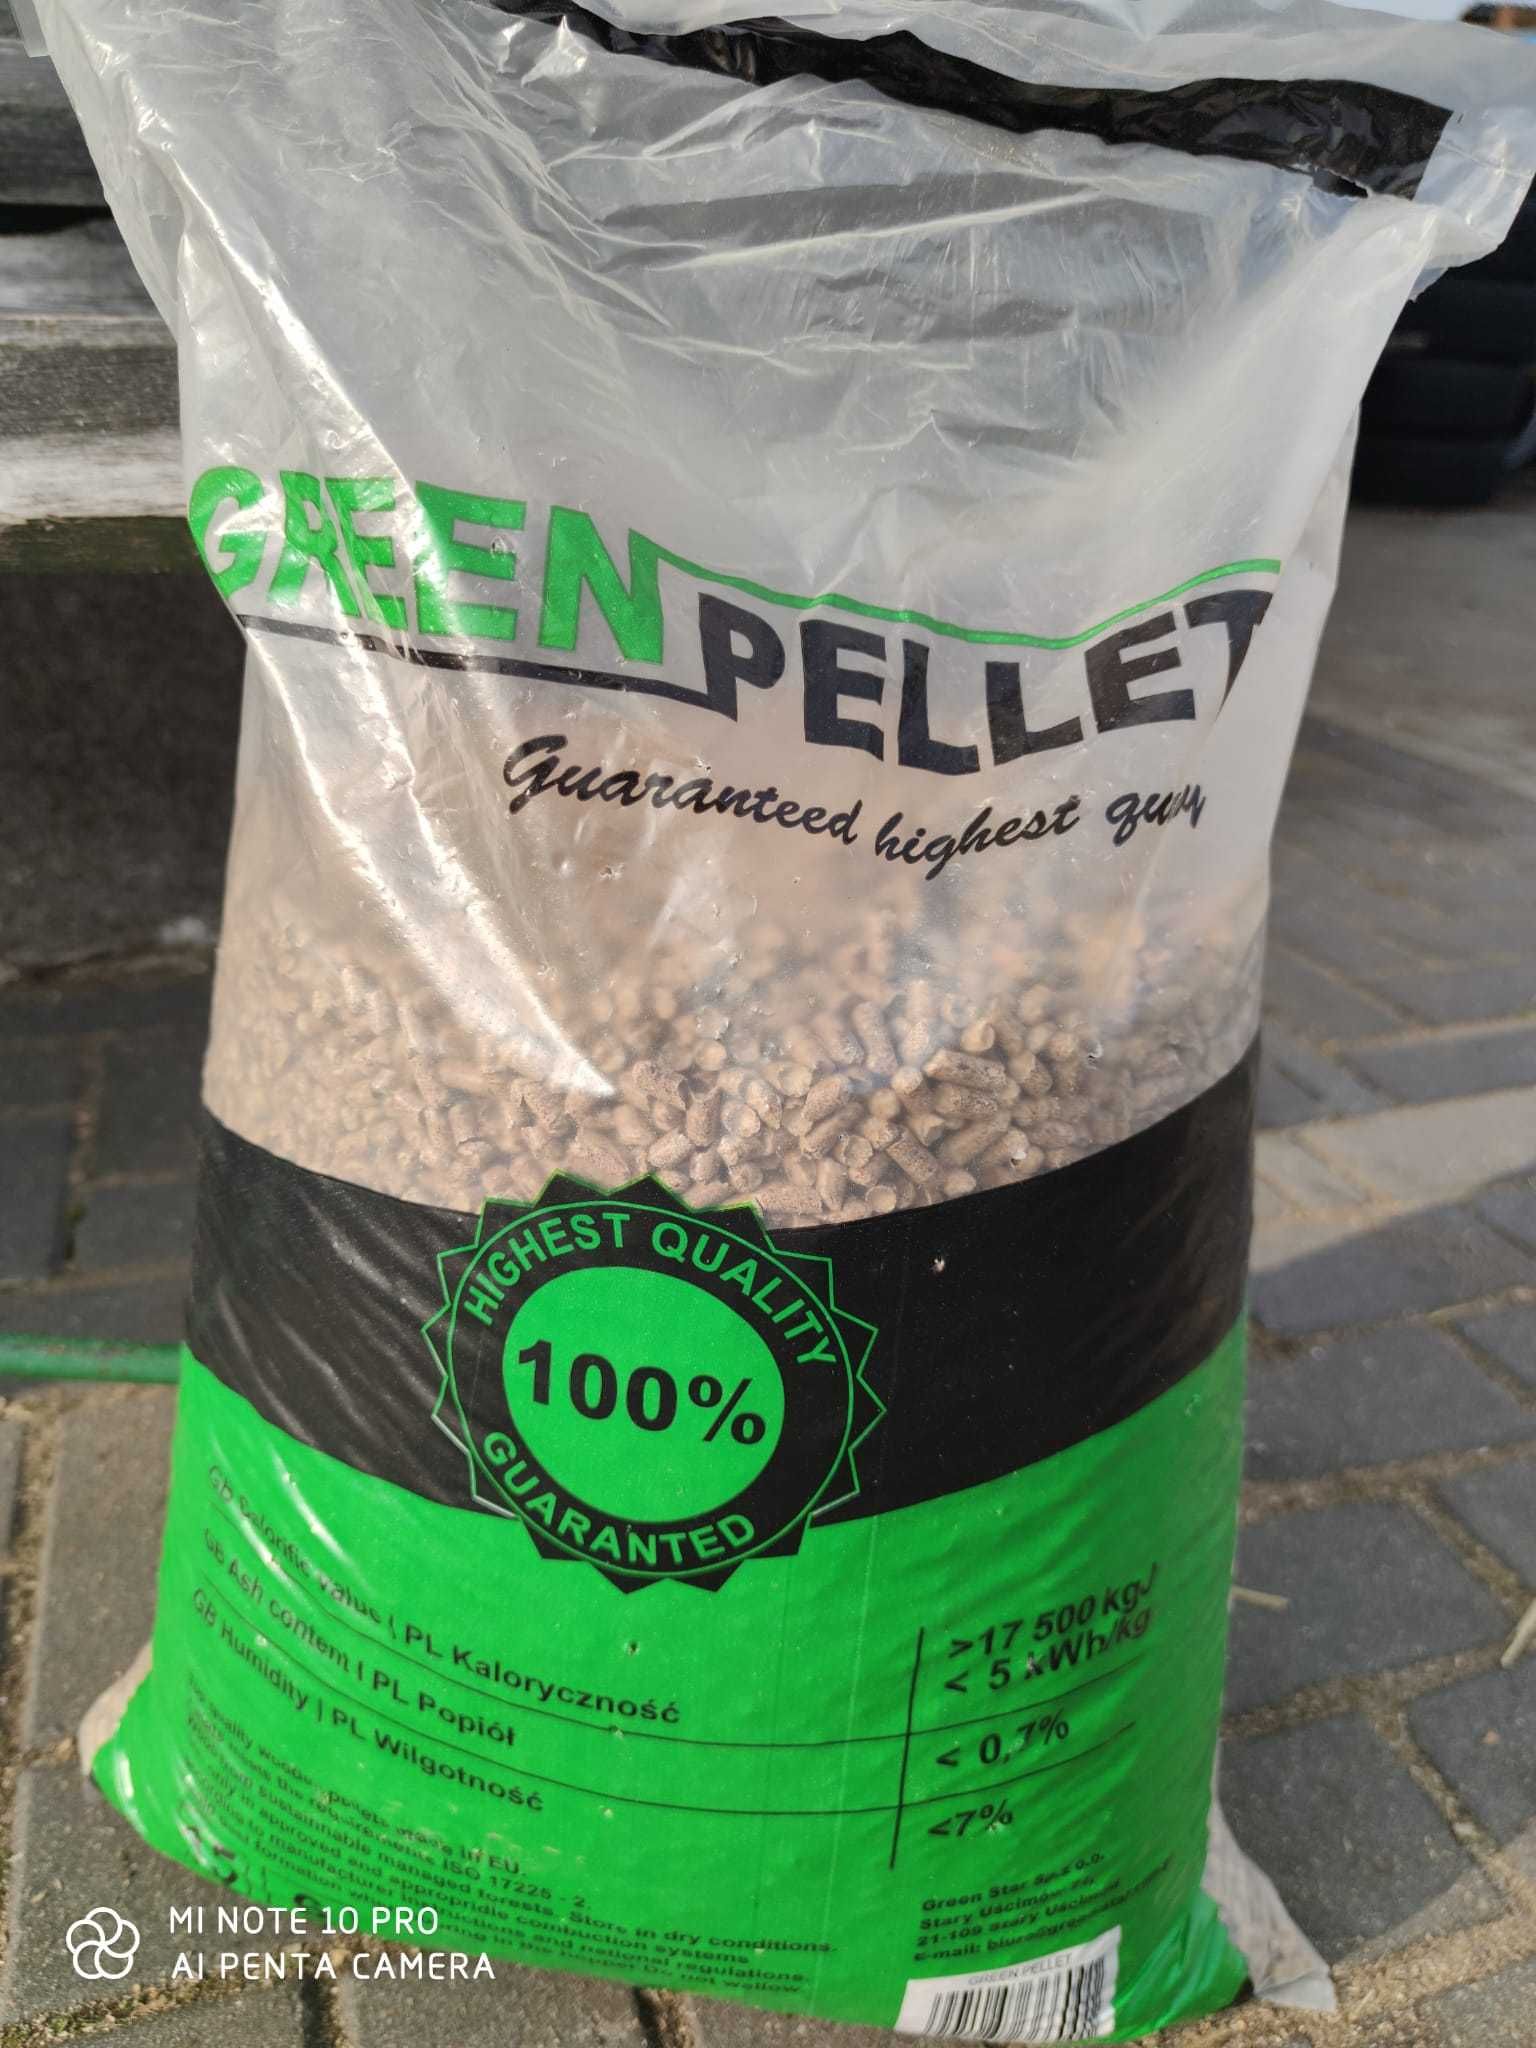 Green pellet iglasto-liściasty już od 1 palety